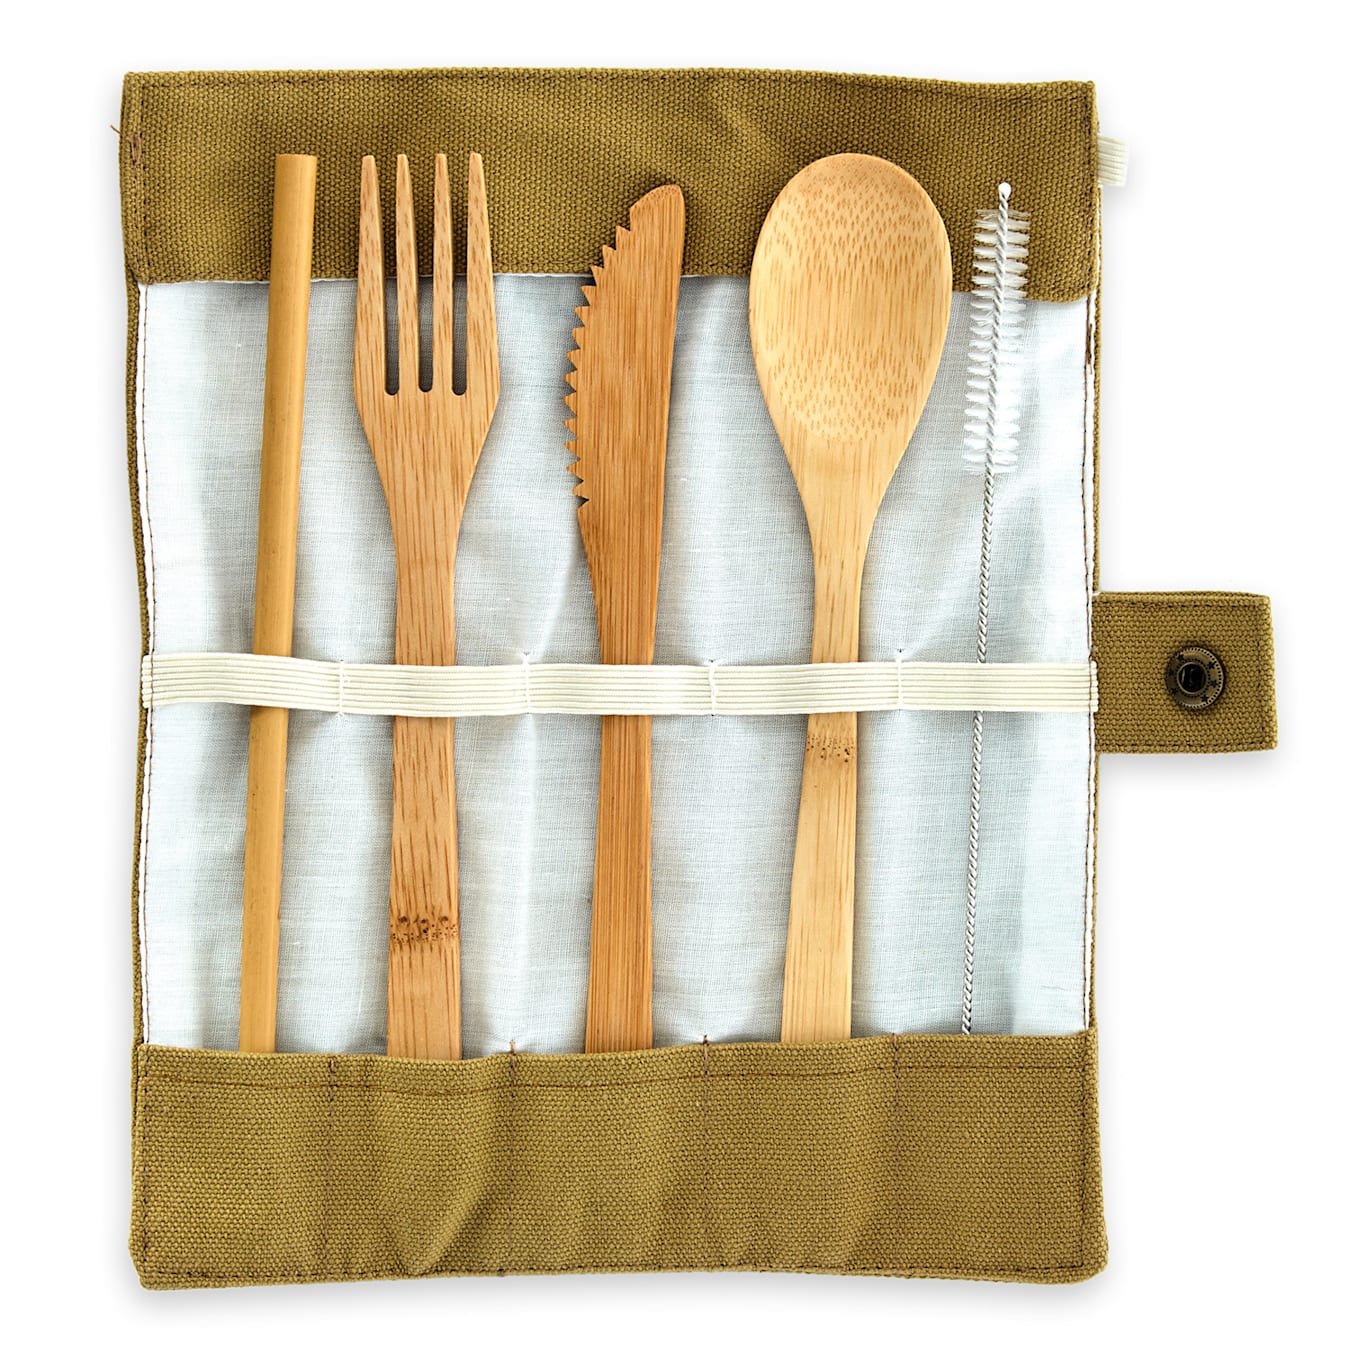 Reisebesteck in brauner Tasche Picknickbesteck Besteckset | 5-teilig |  zusammenrollbar | umweltfreundlich | Bambus